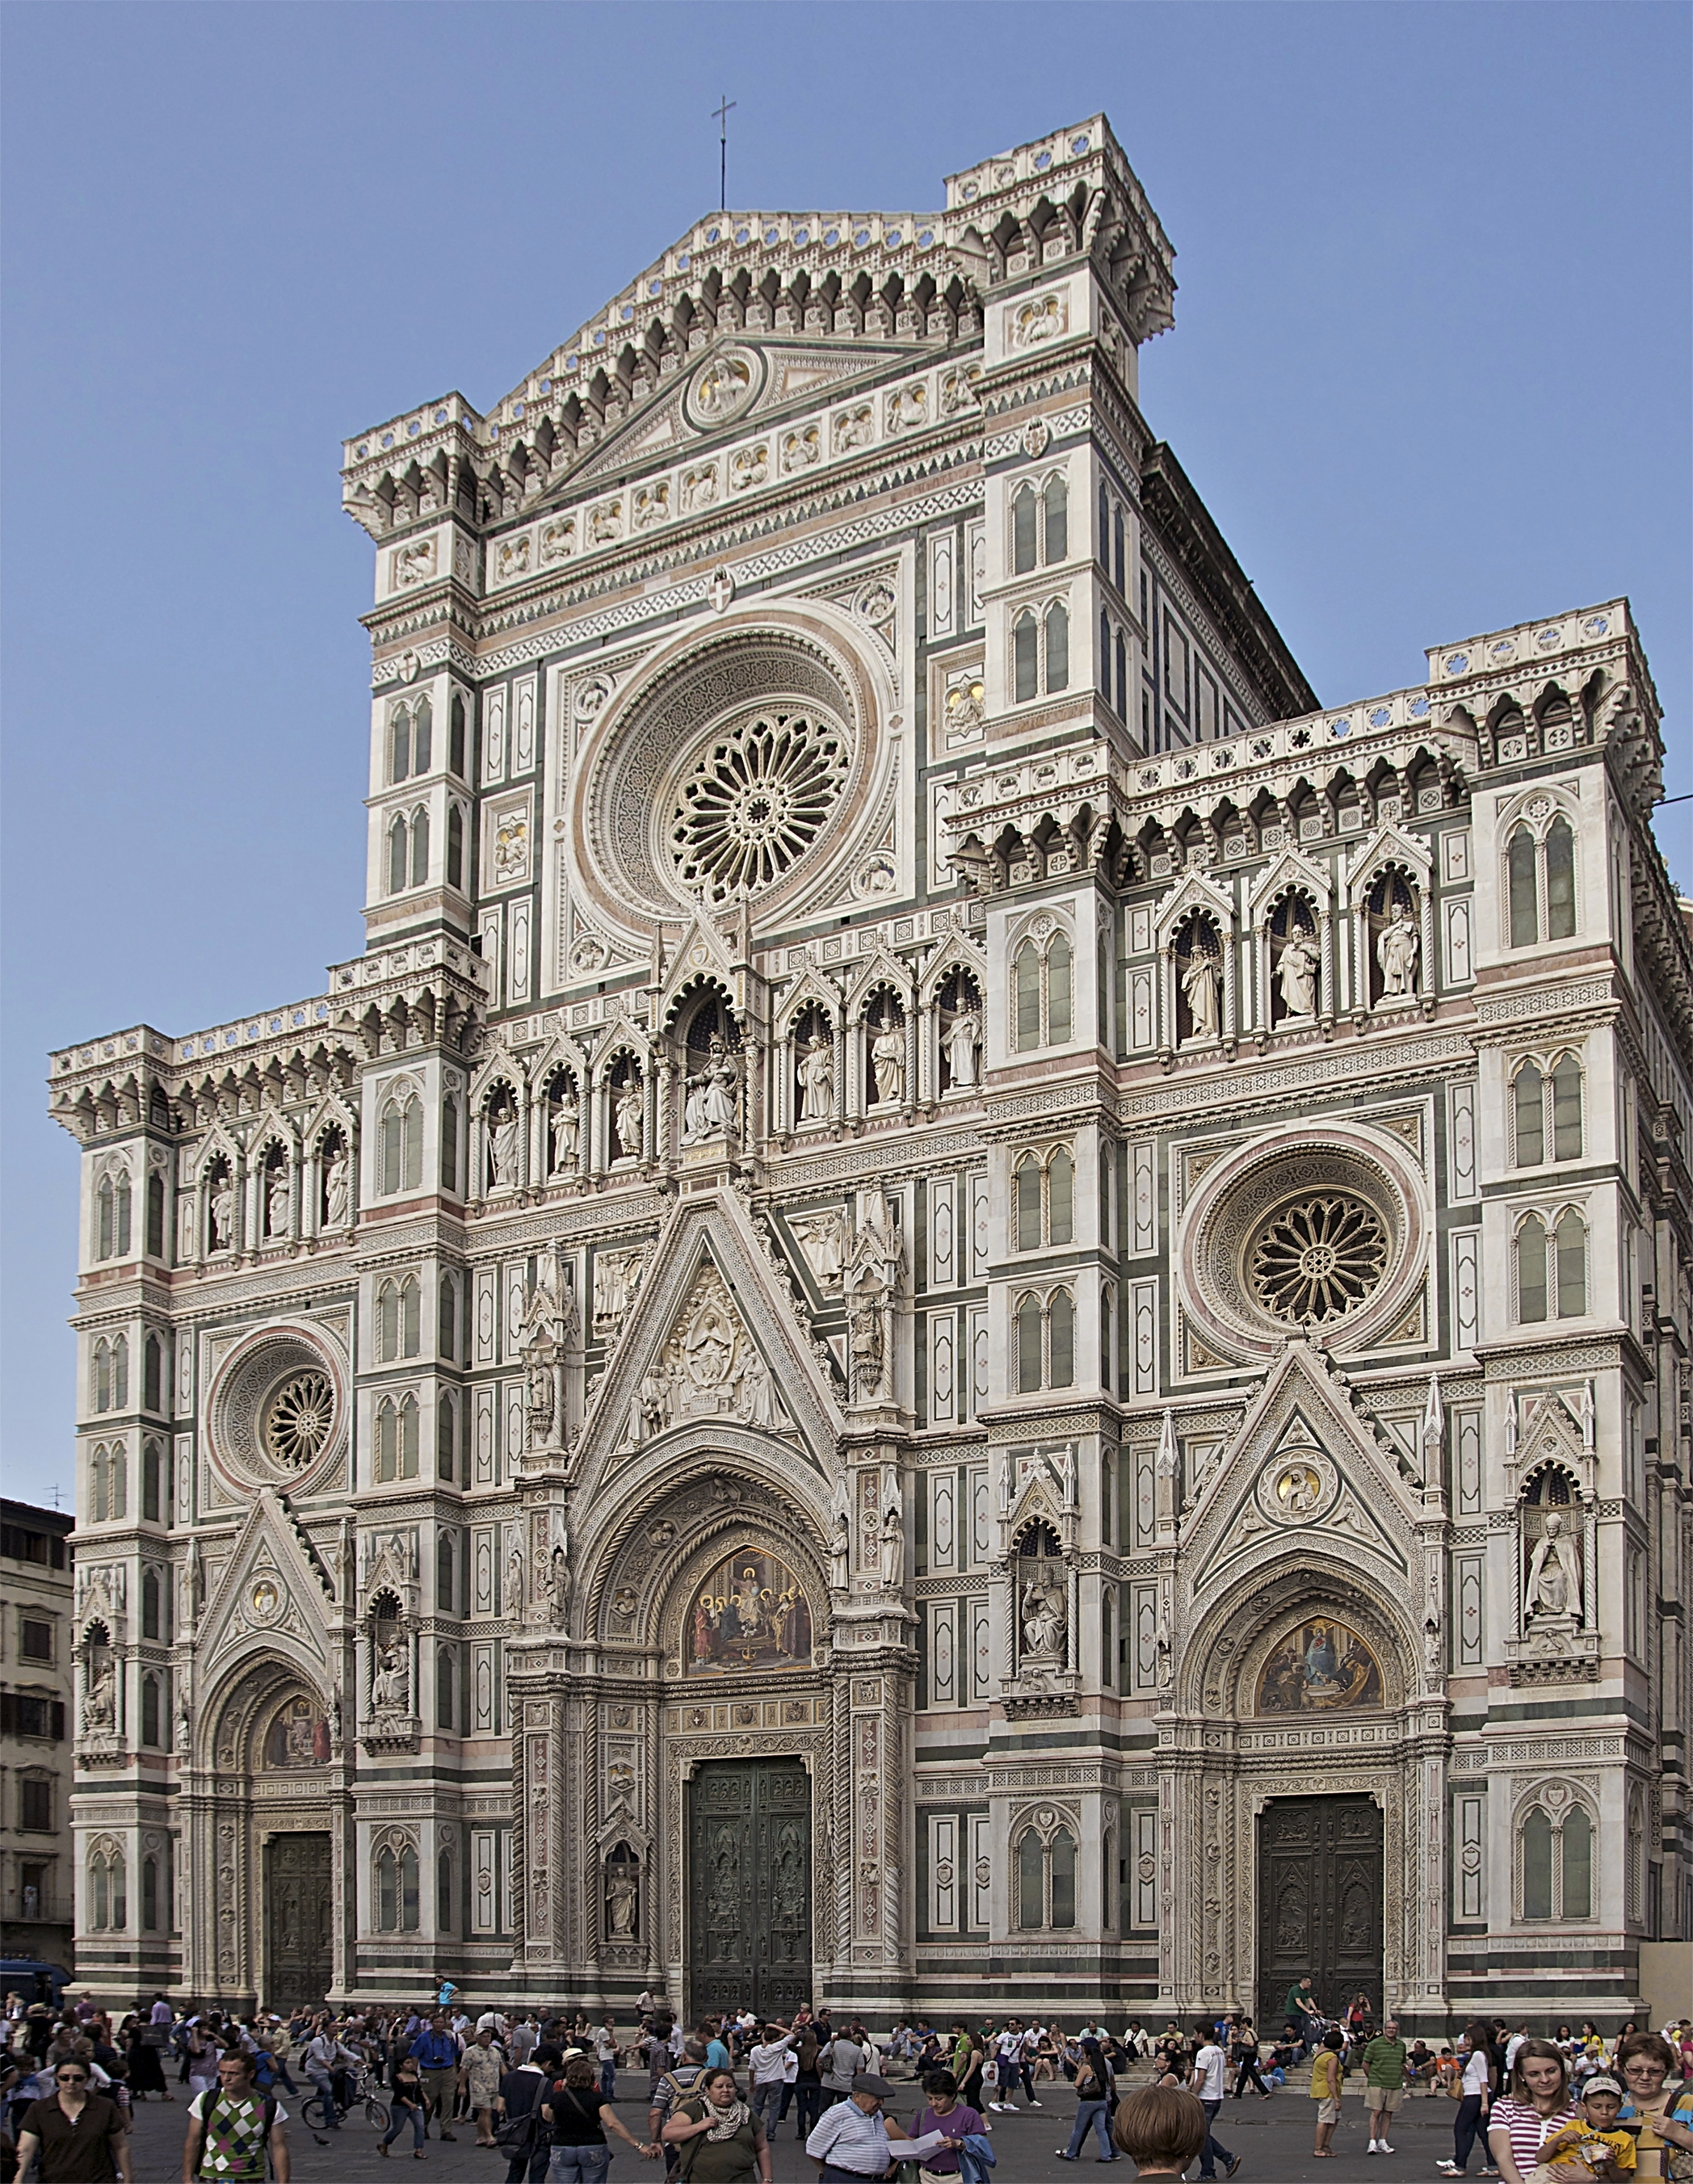 Façade cathédrale Florence